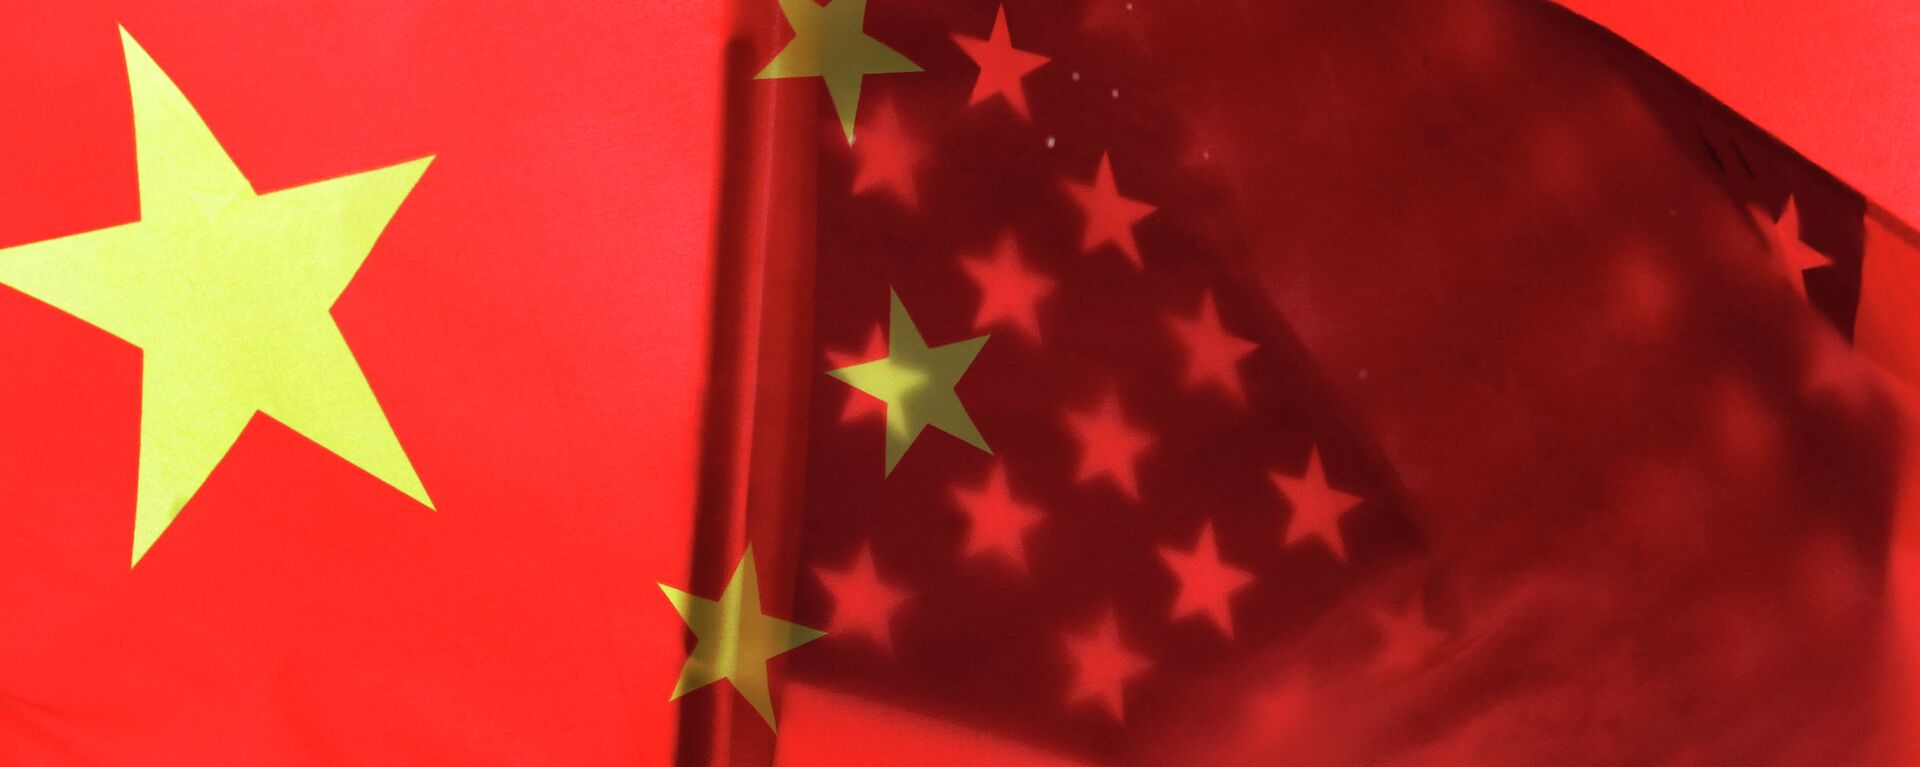 Banderas de China y EEUU - Sputnik Mundo, 1920, 28.07.2020